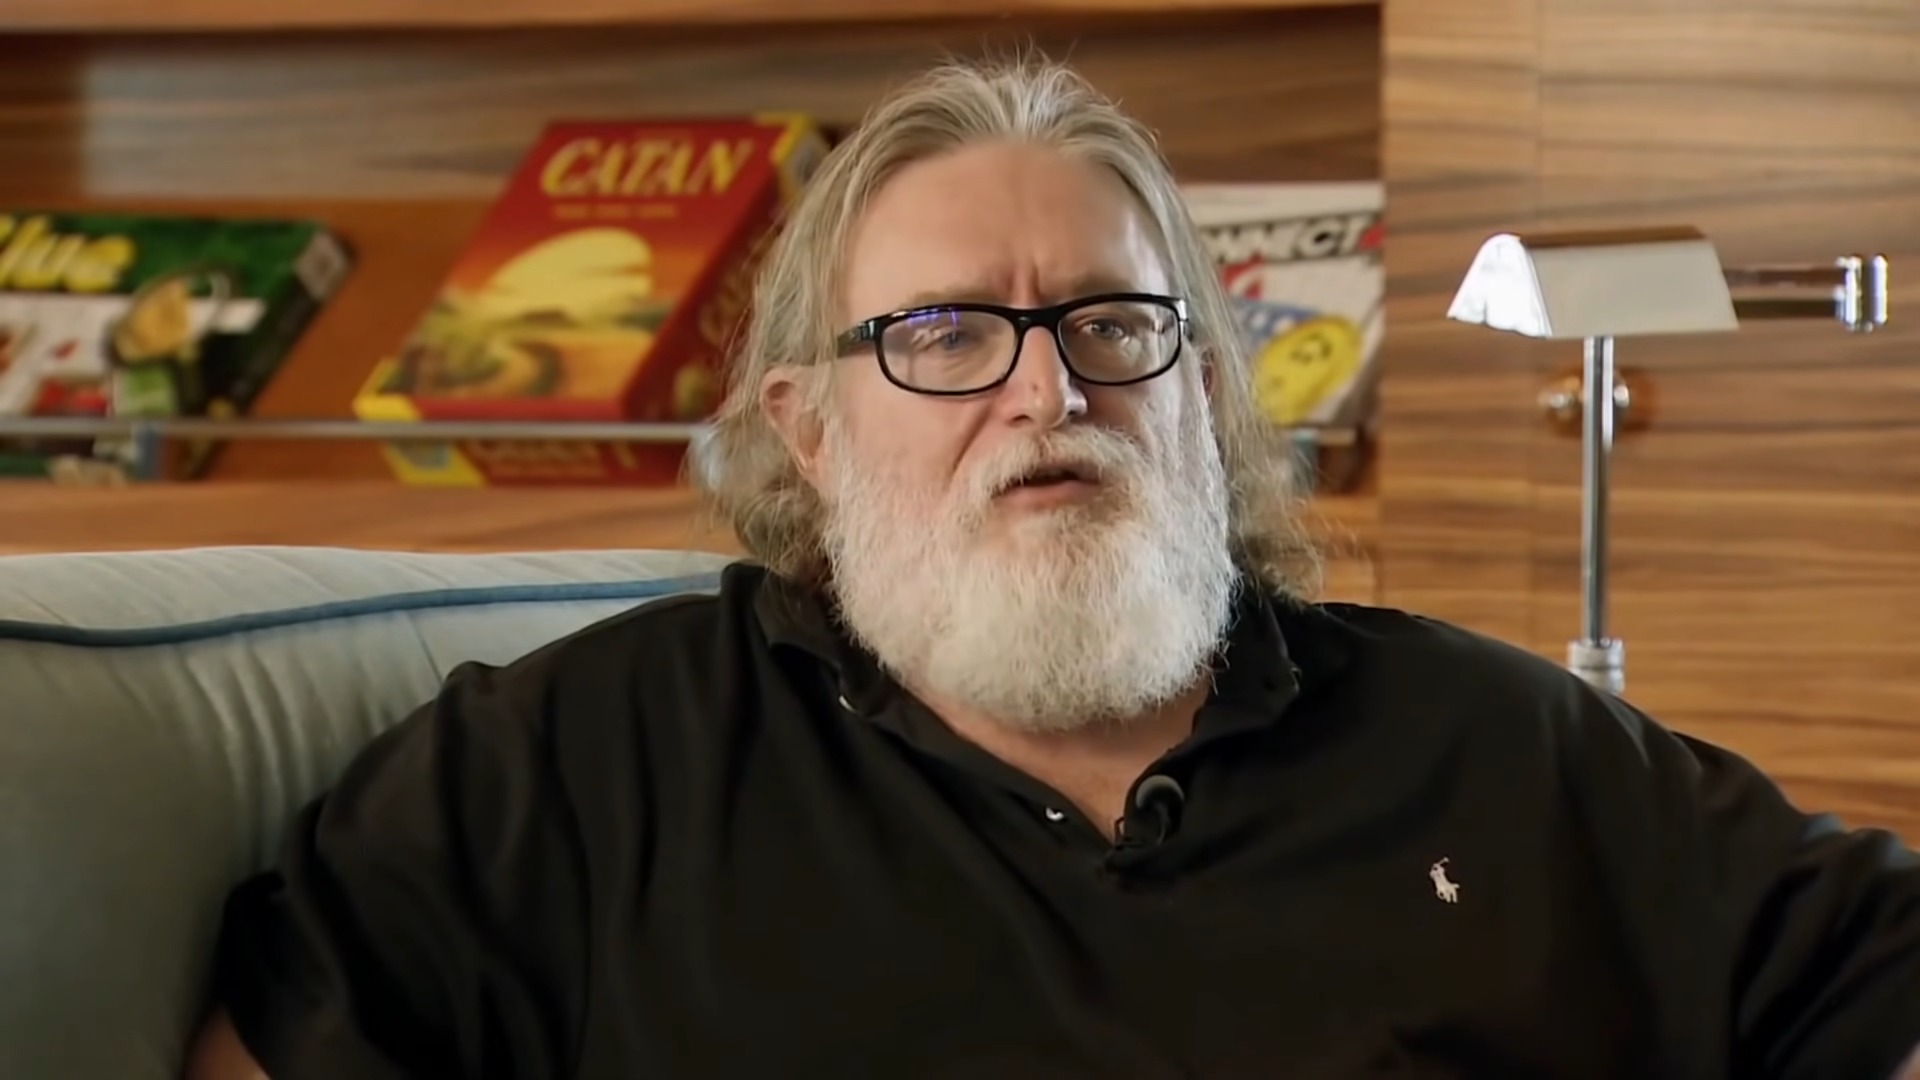 Tudo sobre Gabe Newell - História e Notícias - Canaltech